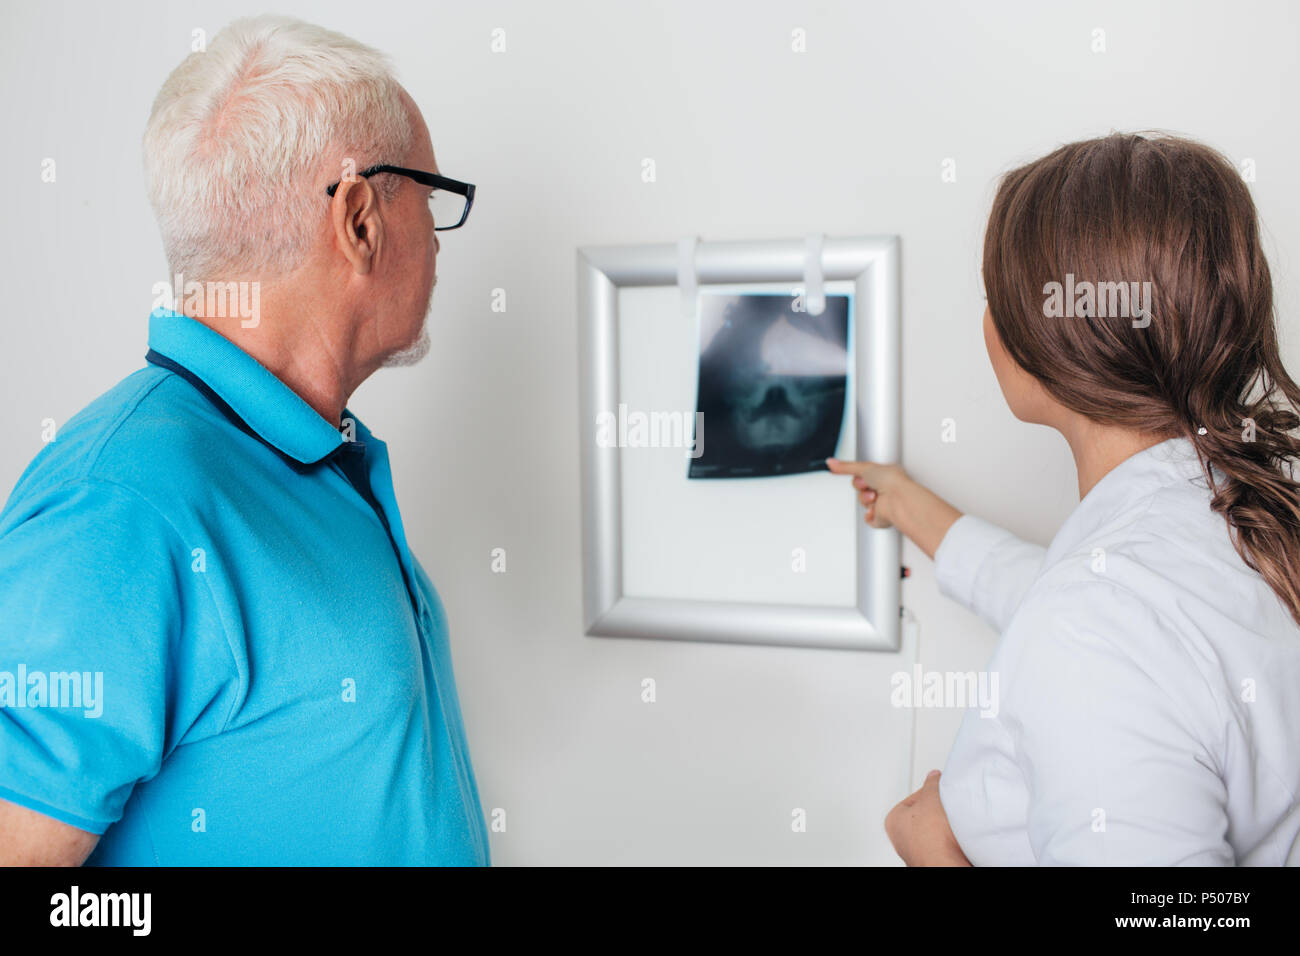 Medico la revisione delle immagini a raggi x con paziente anziano in ufficio medici Foto Stock